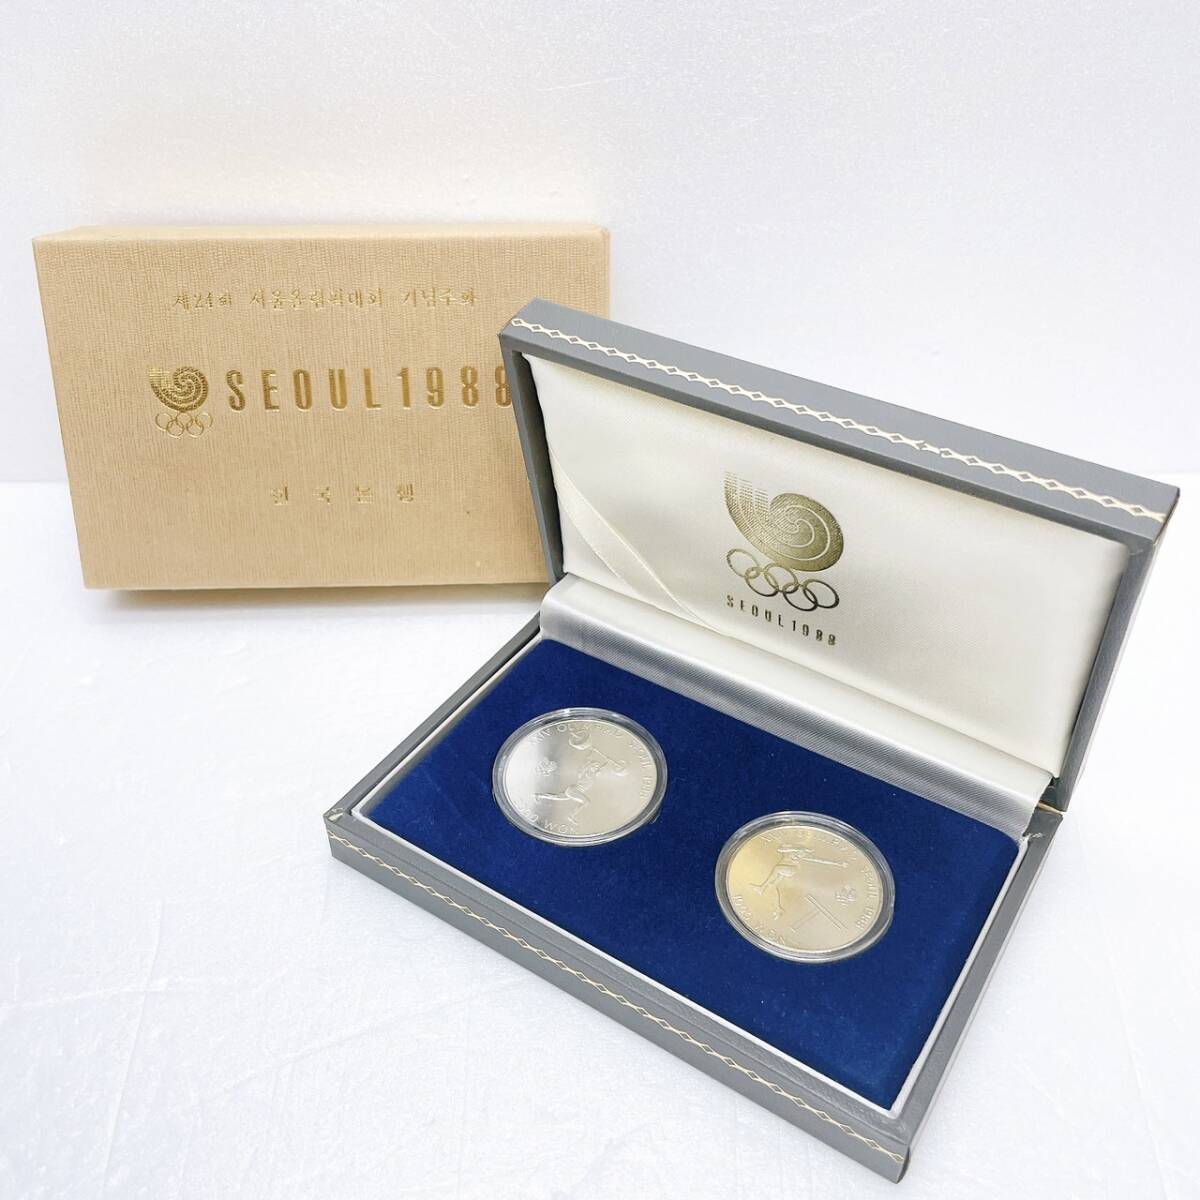 [DHS3101HM]SEOUL1988 душа Olympic медаль памятная монета памятная монета комплект Корея монета 